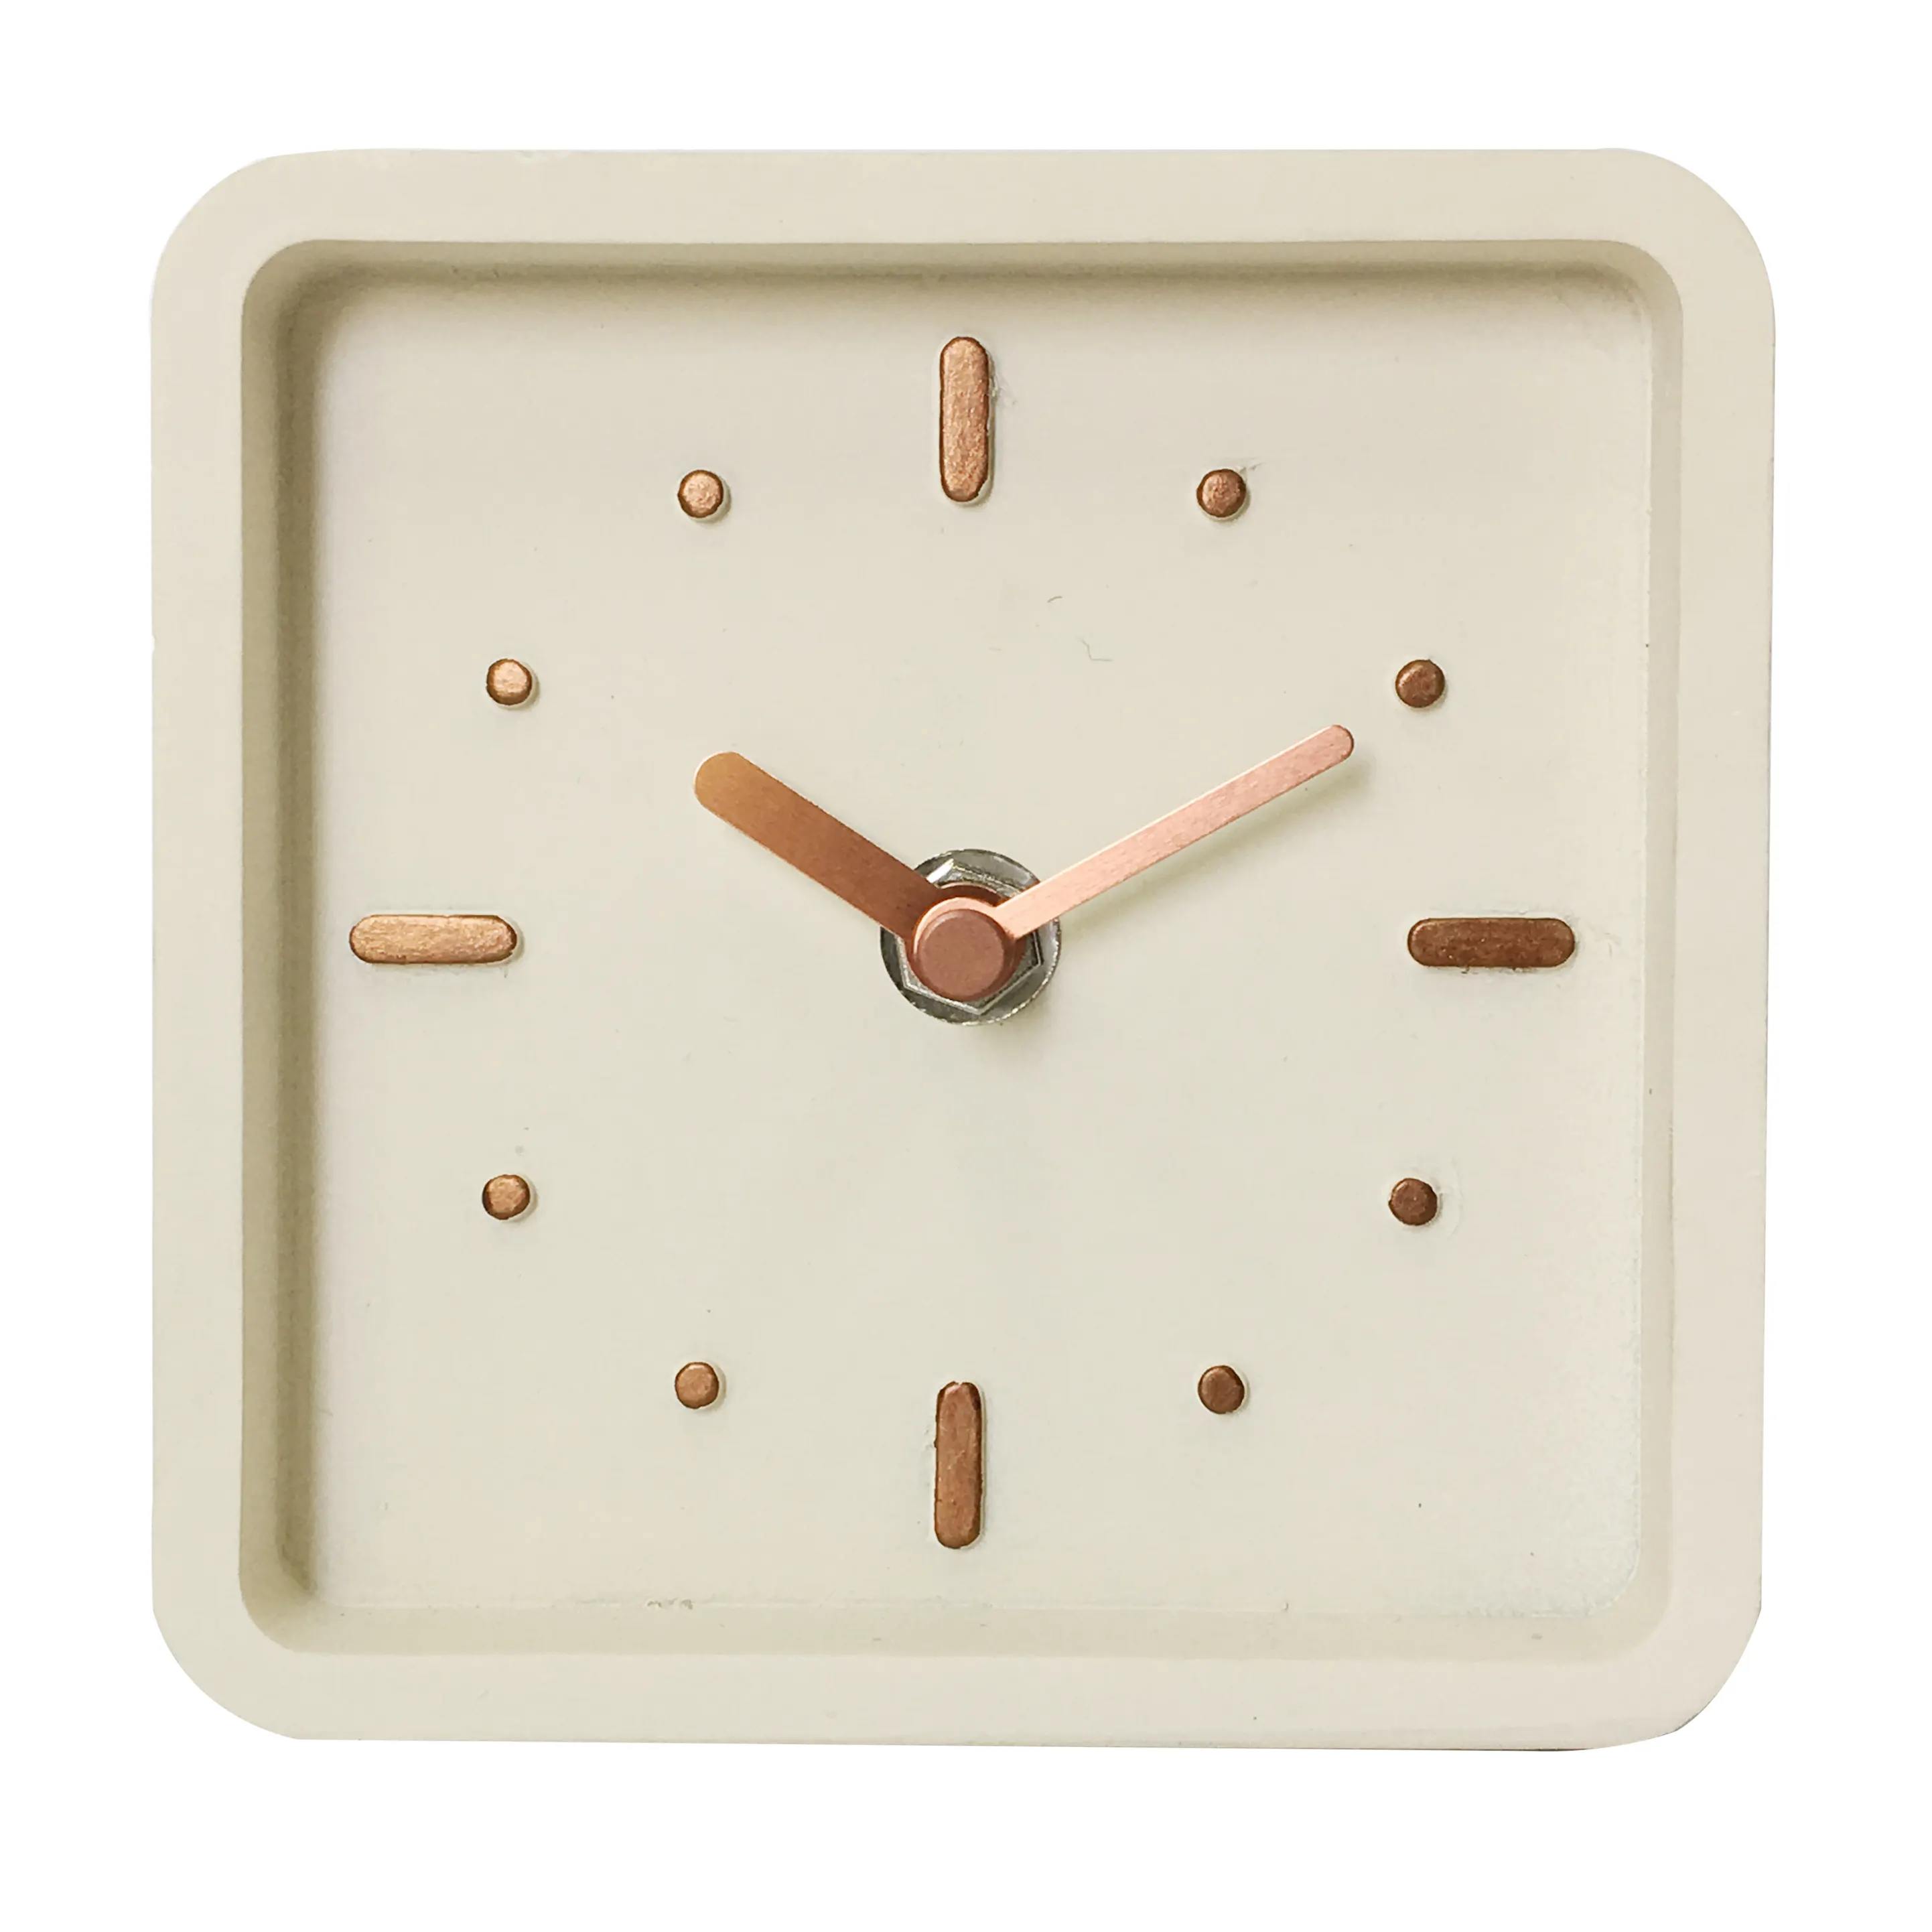 Modern stil reçine saat özelleştirilmiş renk reçine masa saati kare tasarım dekoratif reçine masa saati